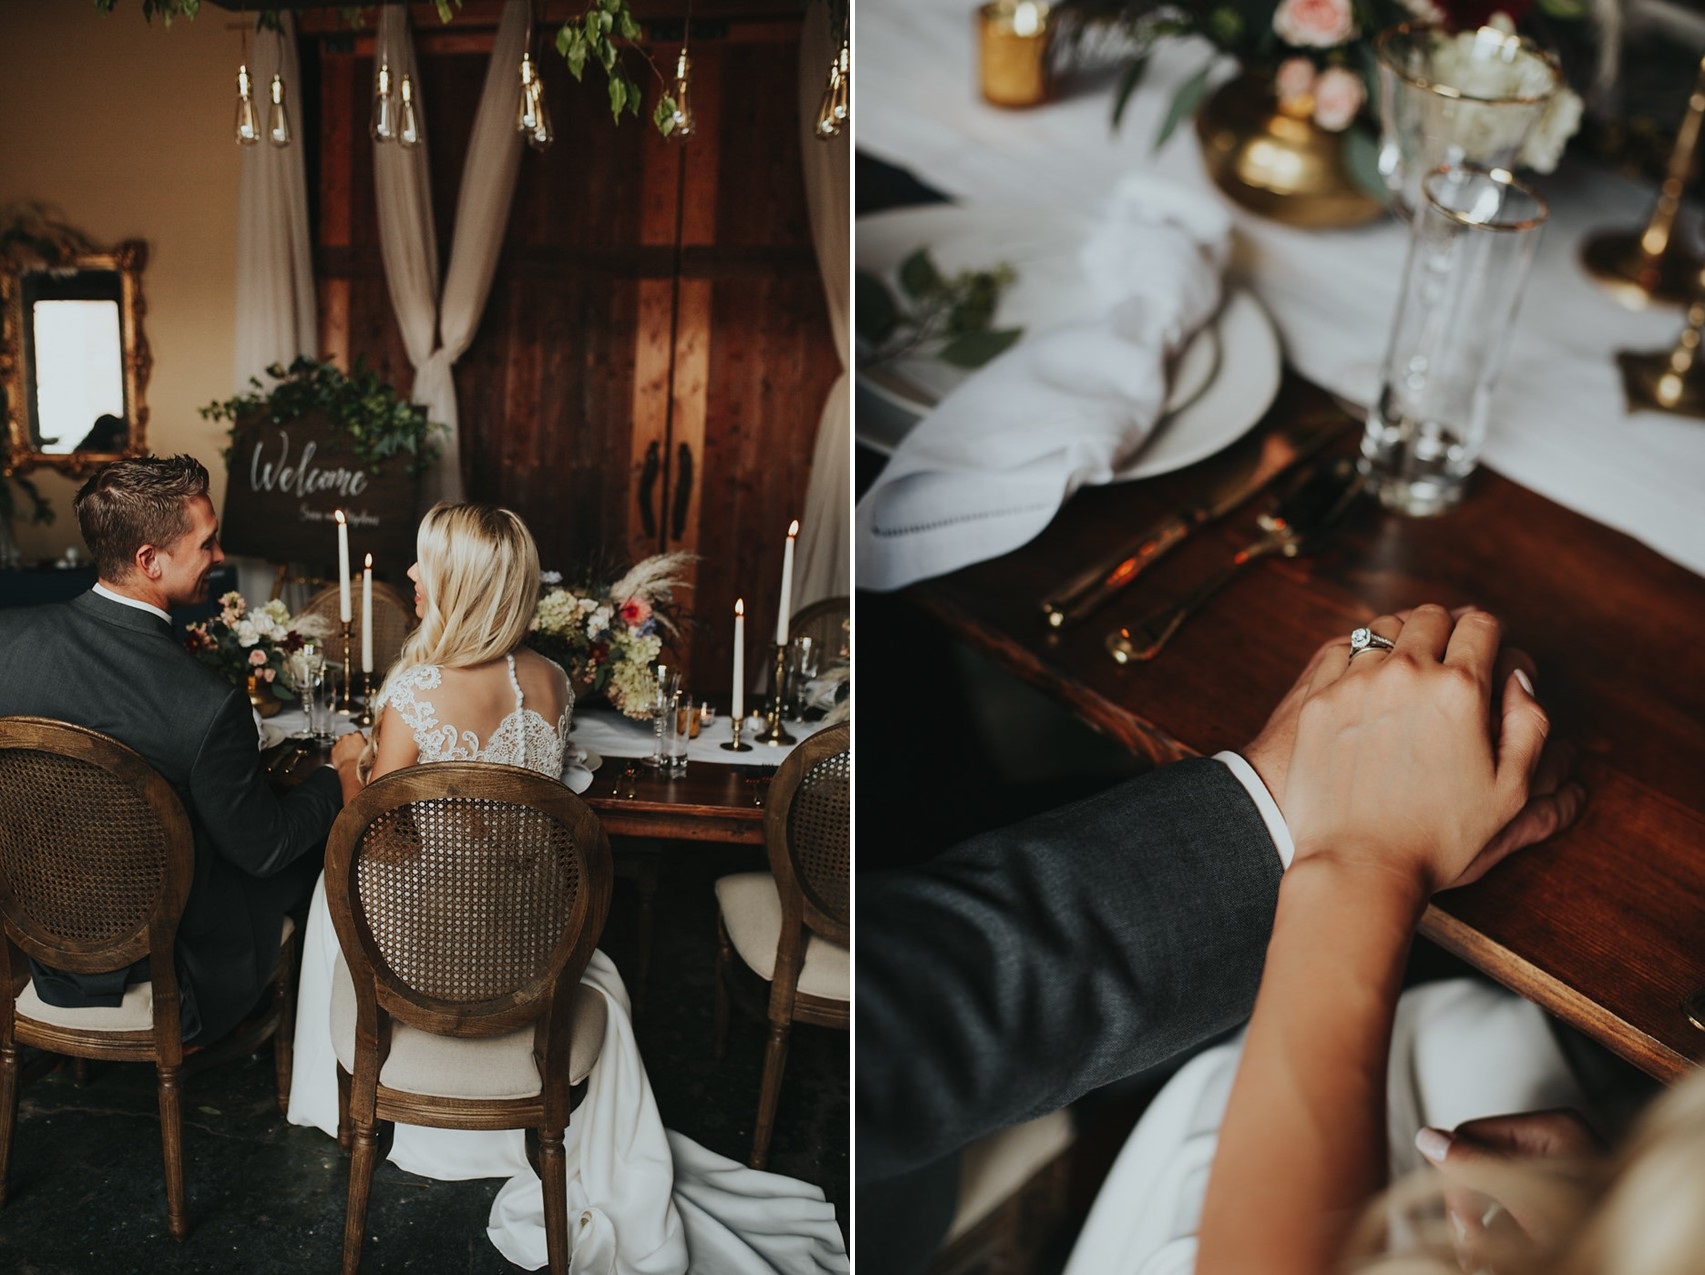 Romantic Rustic Vintage Wedding Reception